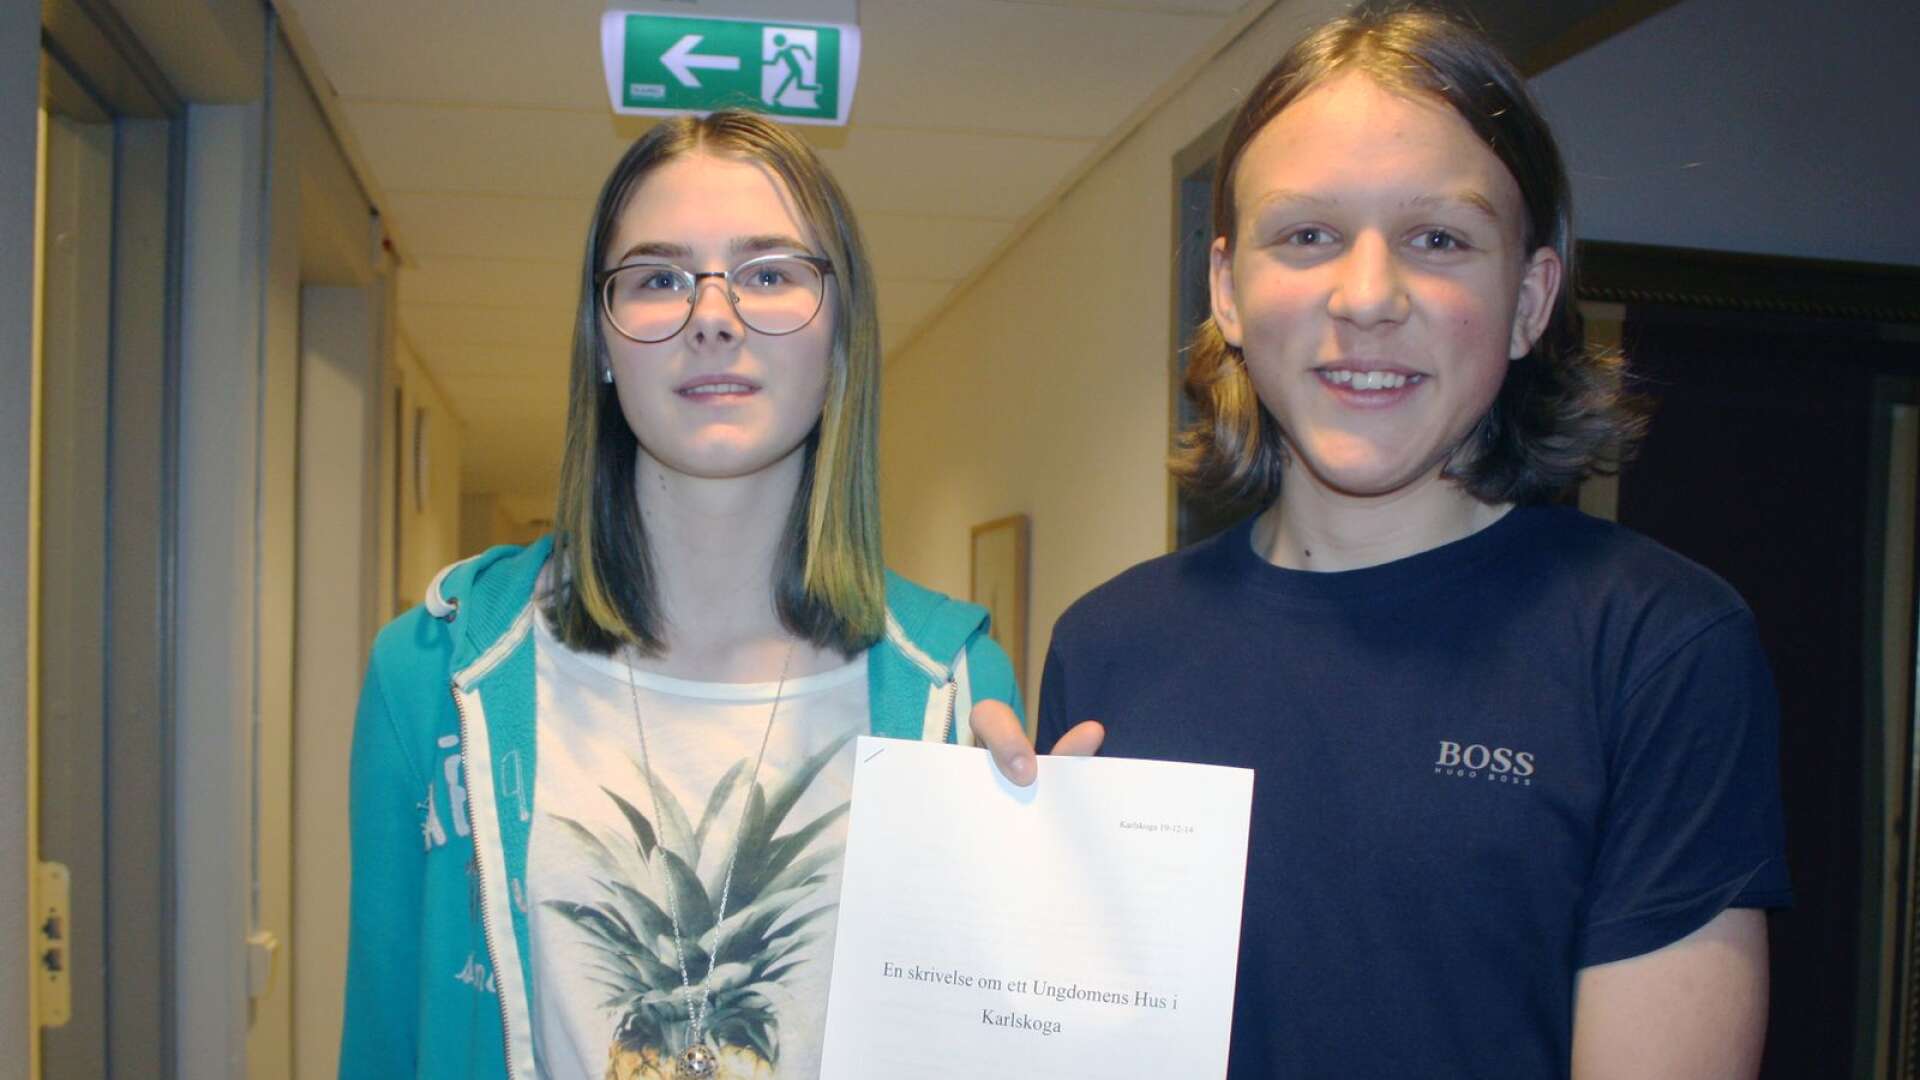 Ungdomsfullmäktiges Ylva Johansson och Adam Granquist håller upp den rapport som sammanställts kring ett Ungdomens hus.